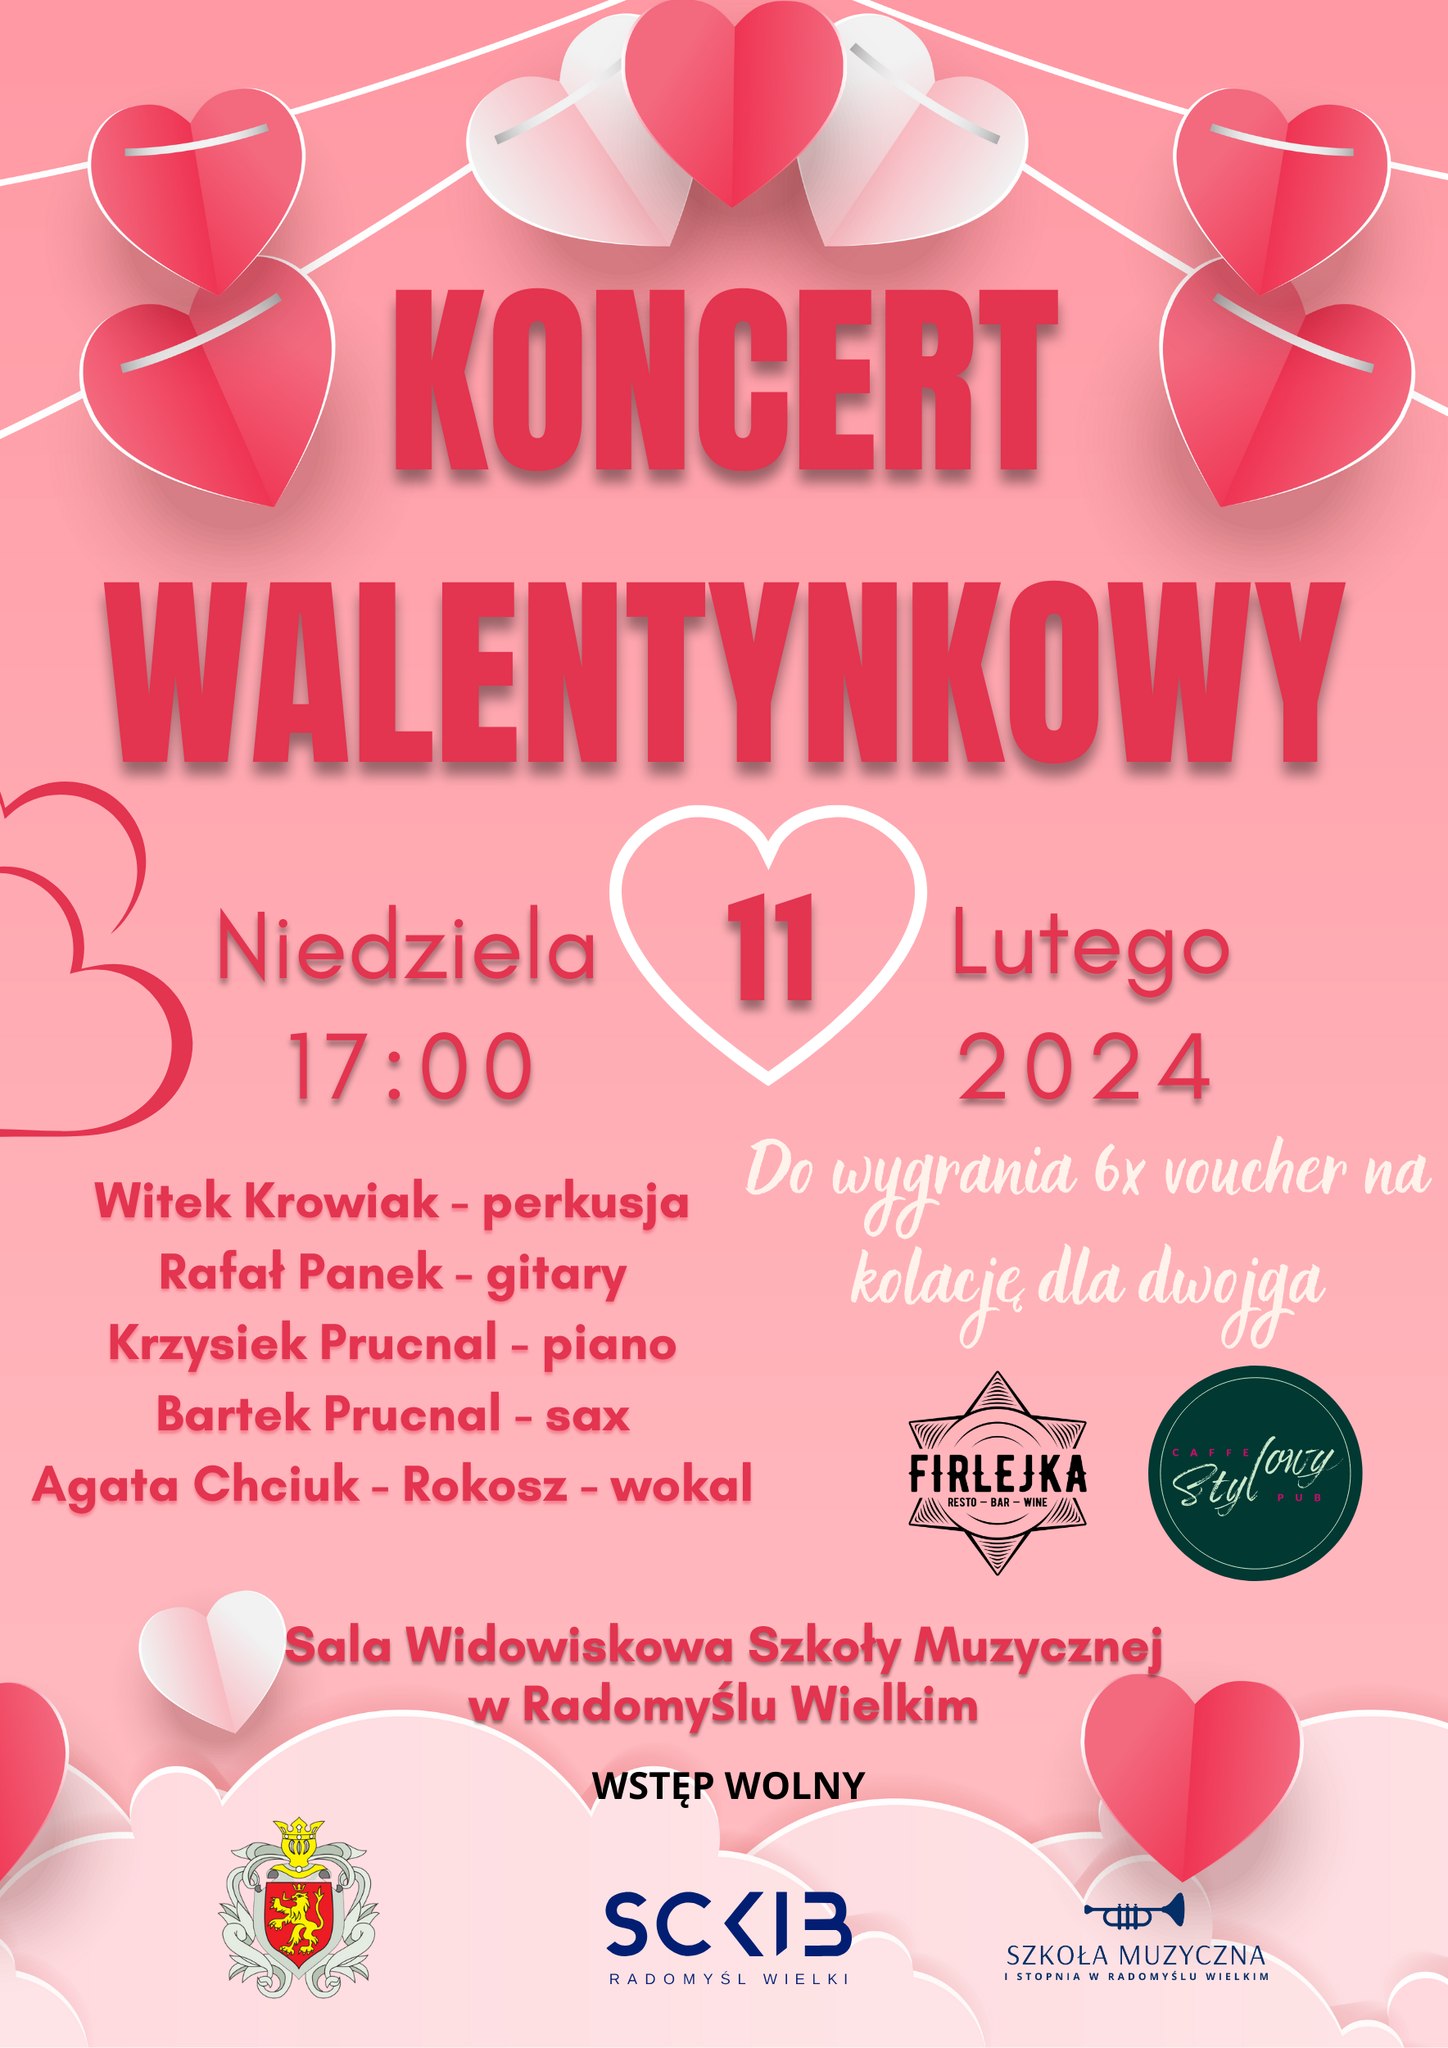 Plakat informujący o koncercie walentynkowym 11 lutego w Radomyślu Wlk.